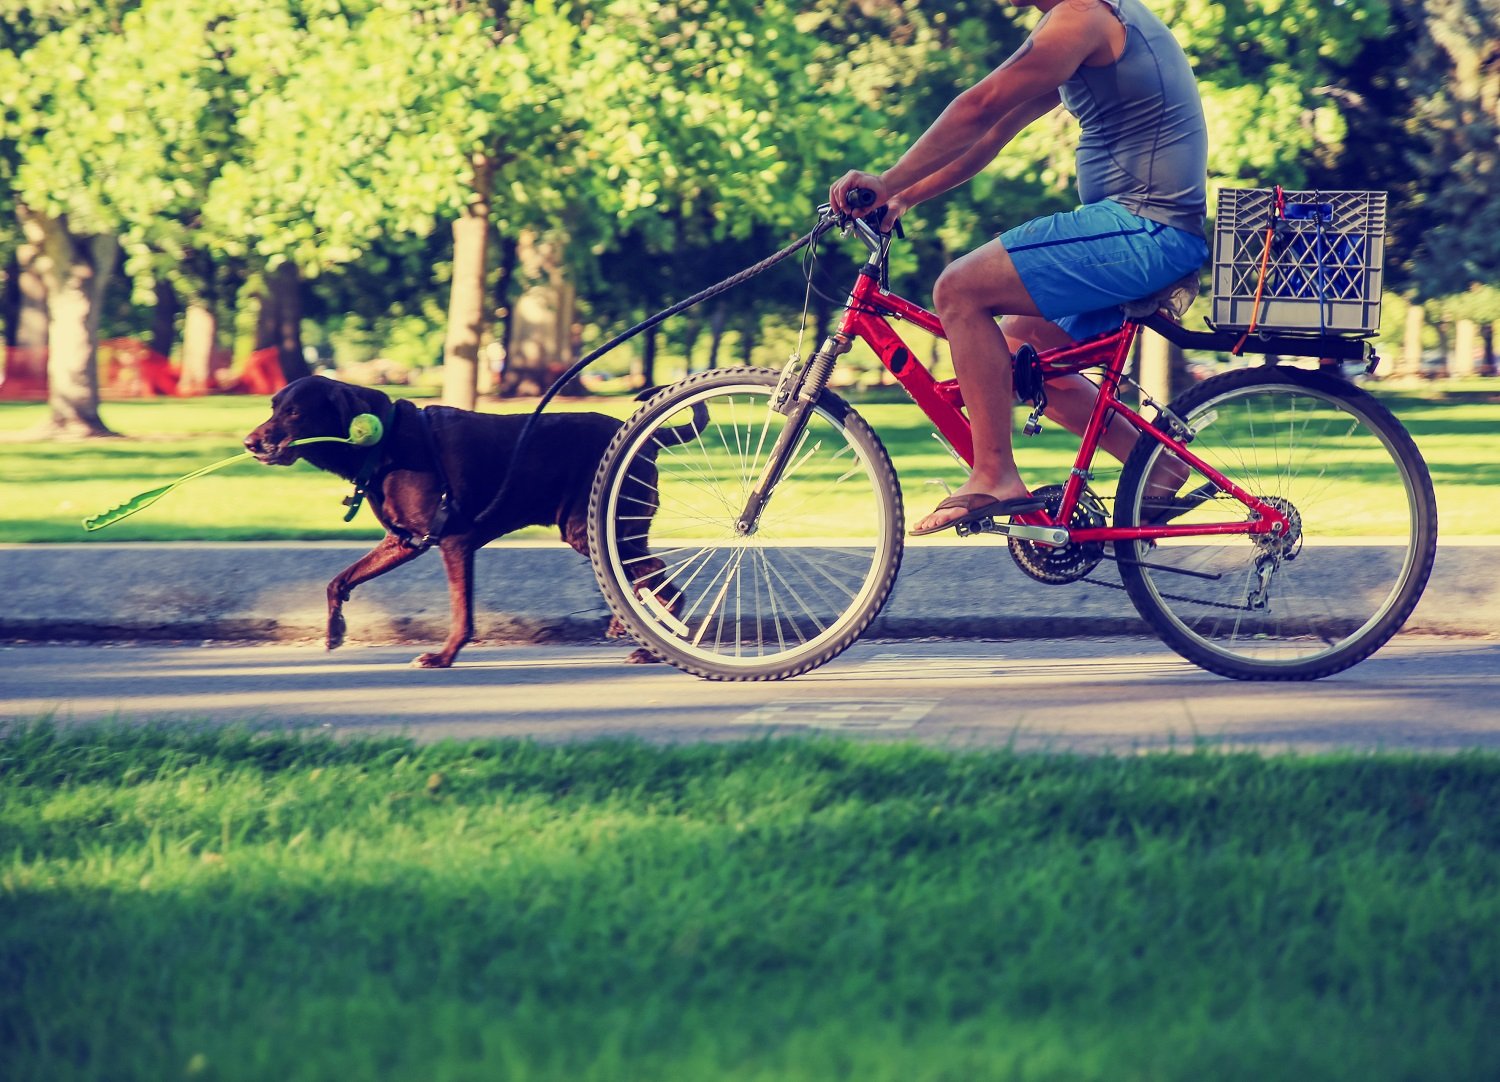 The 5 Best Dog Bike Leashes